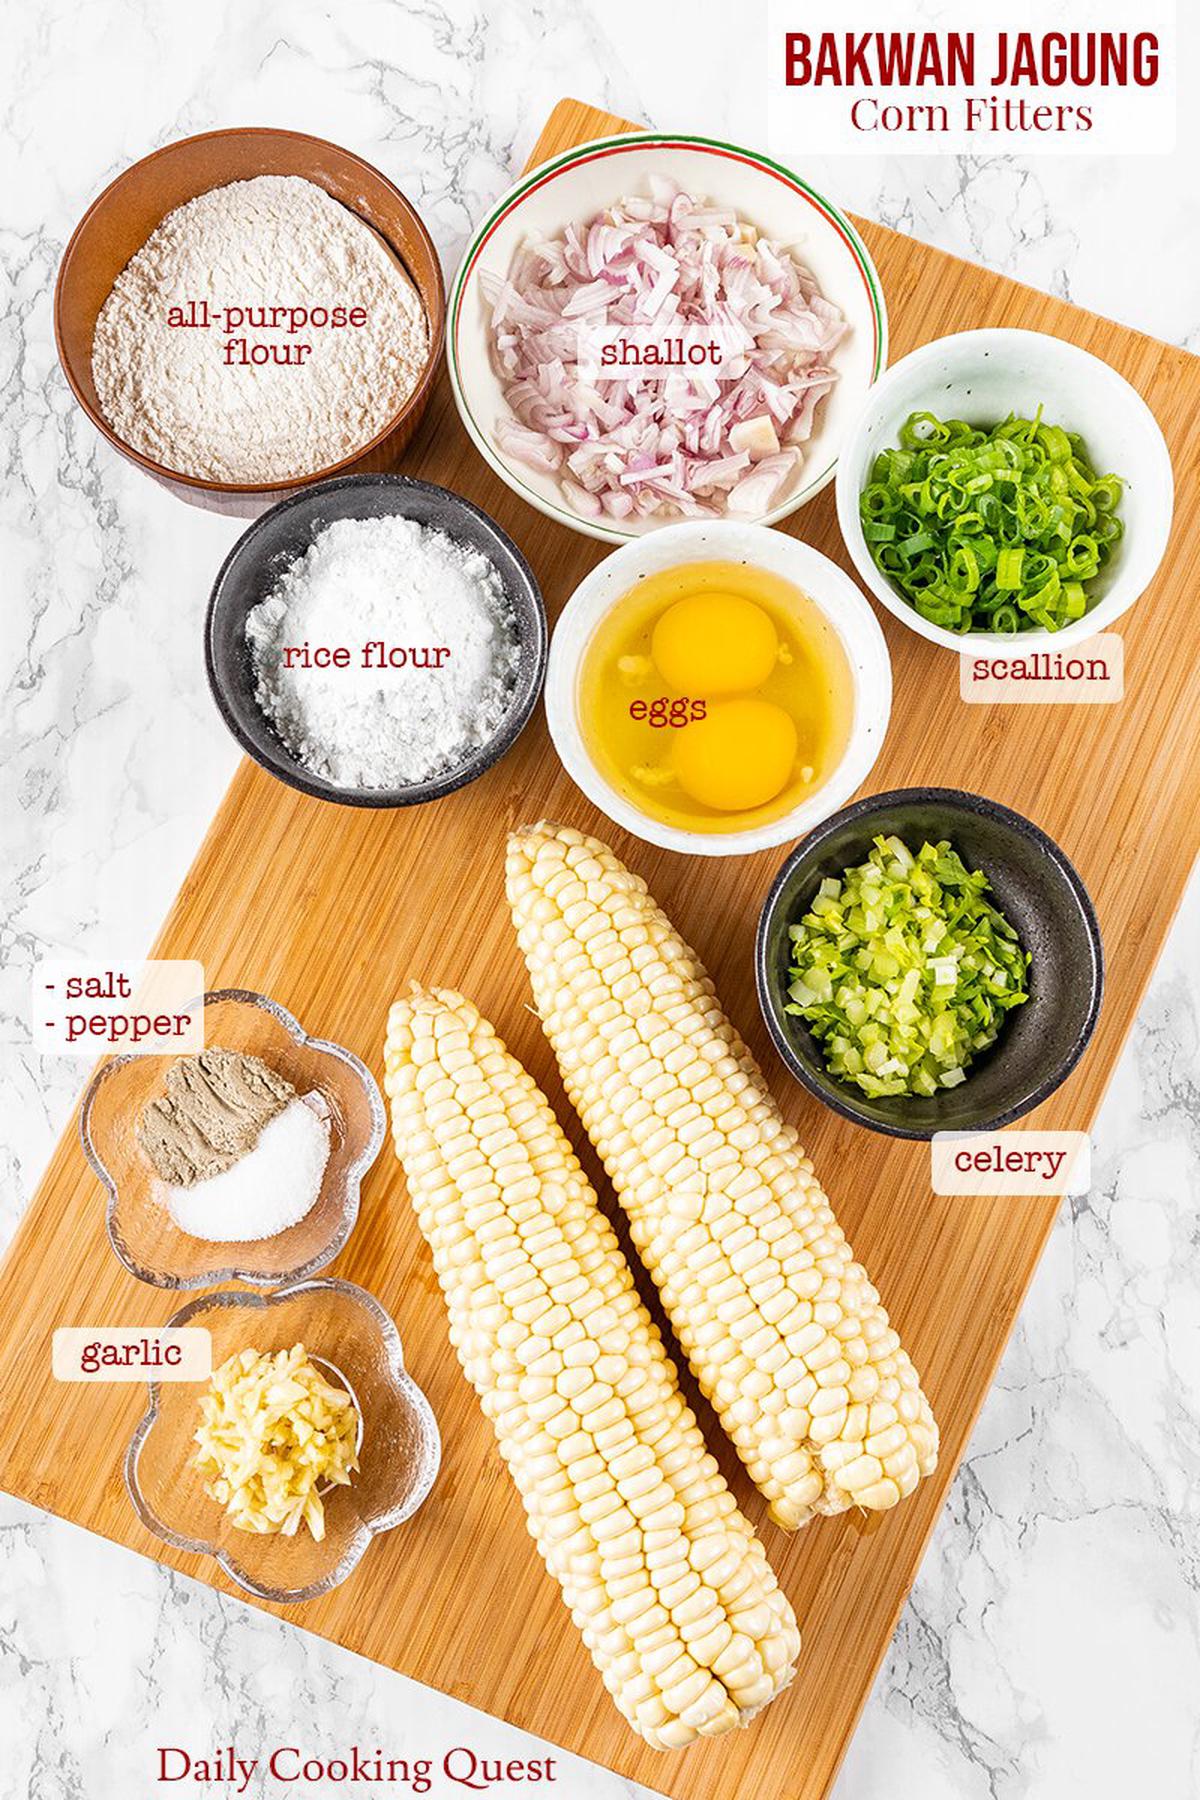 Bakwan Jagung - Corn Fritter Recipe | Daily Cooking Quest